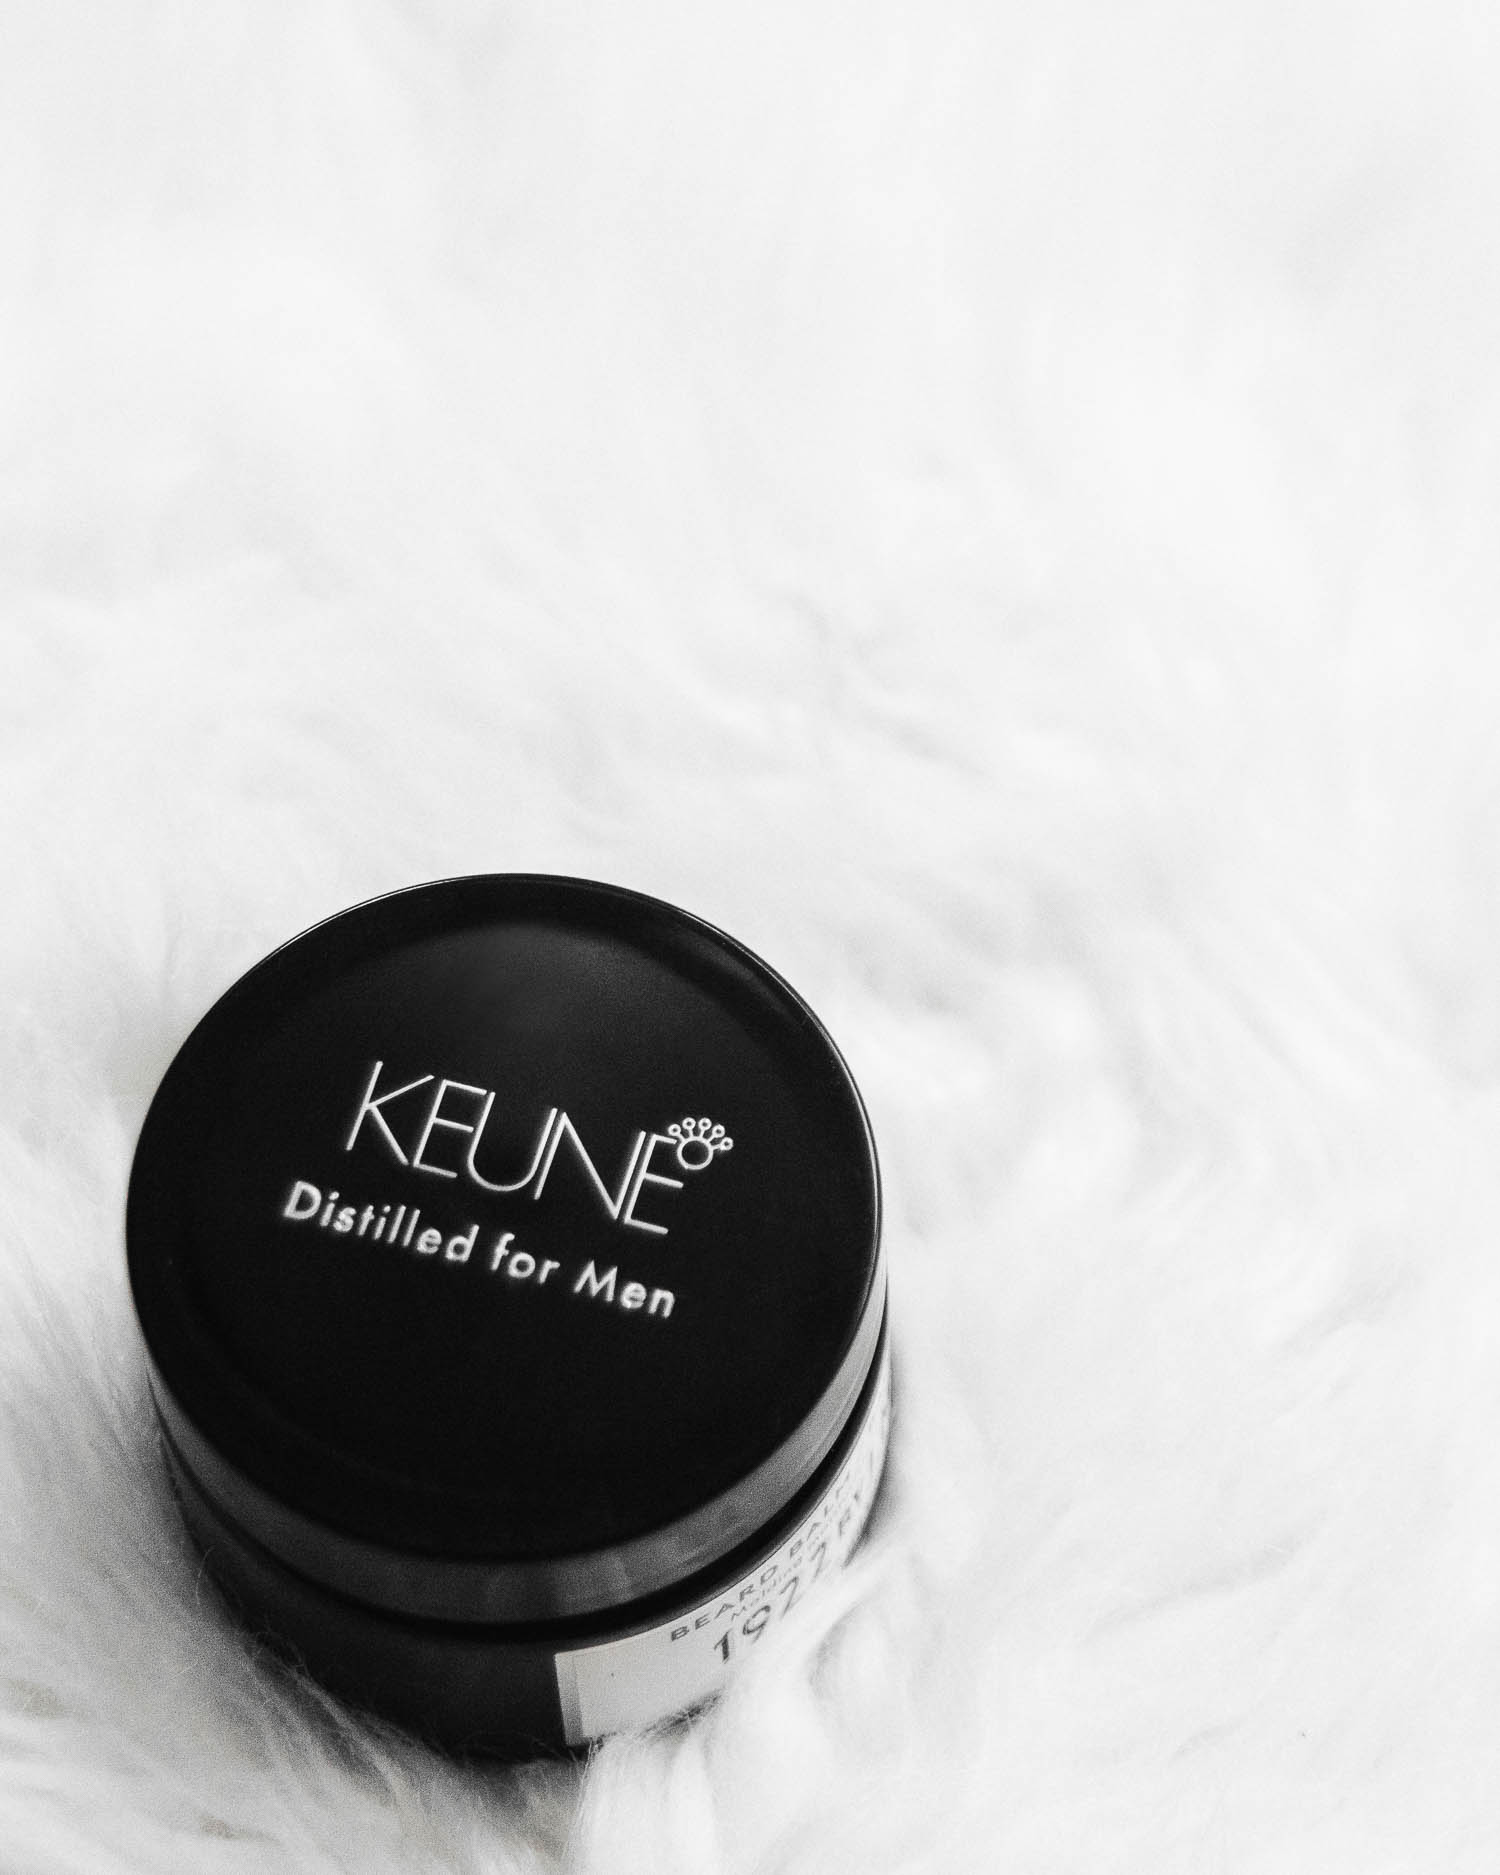 Keune Beard Balm - Distilled for Men